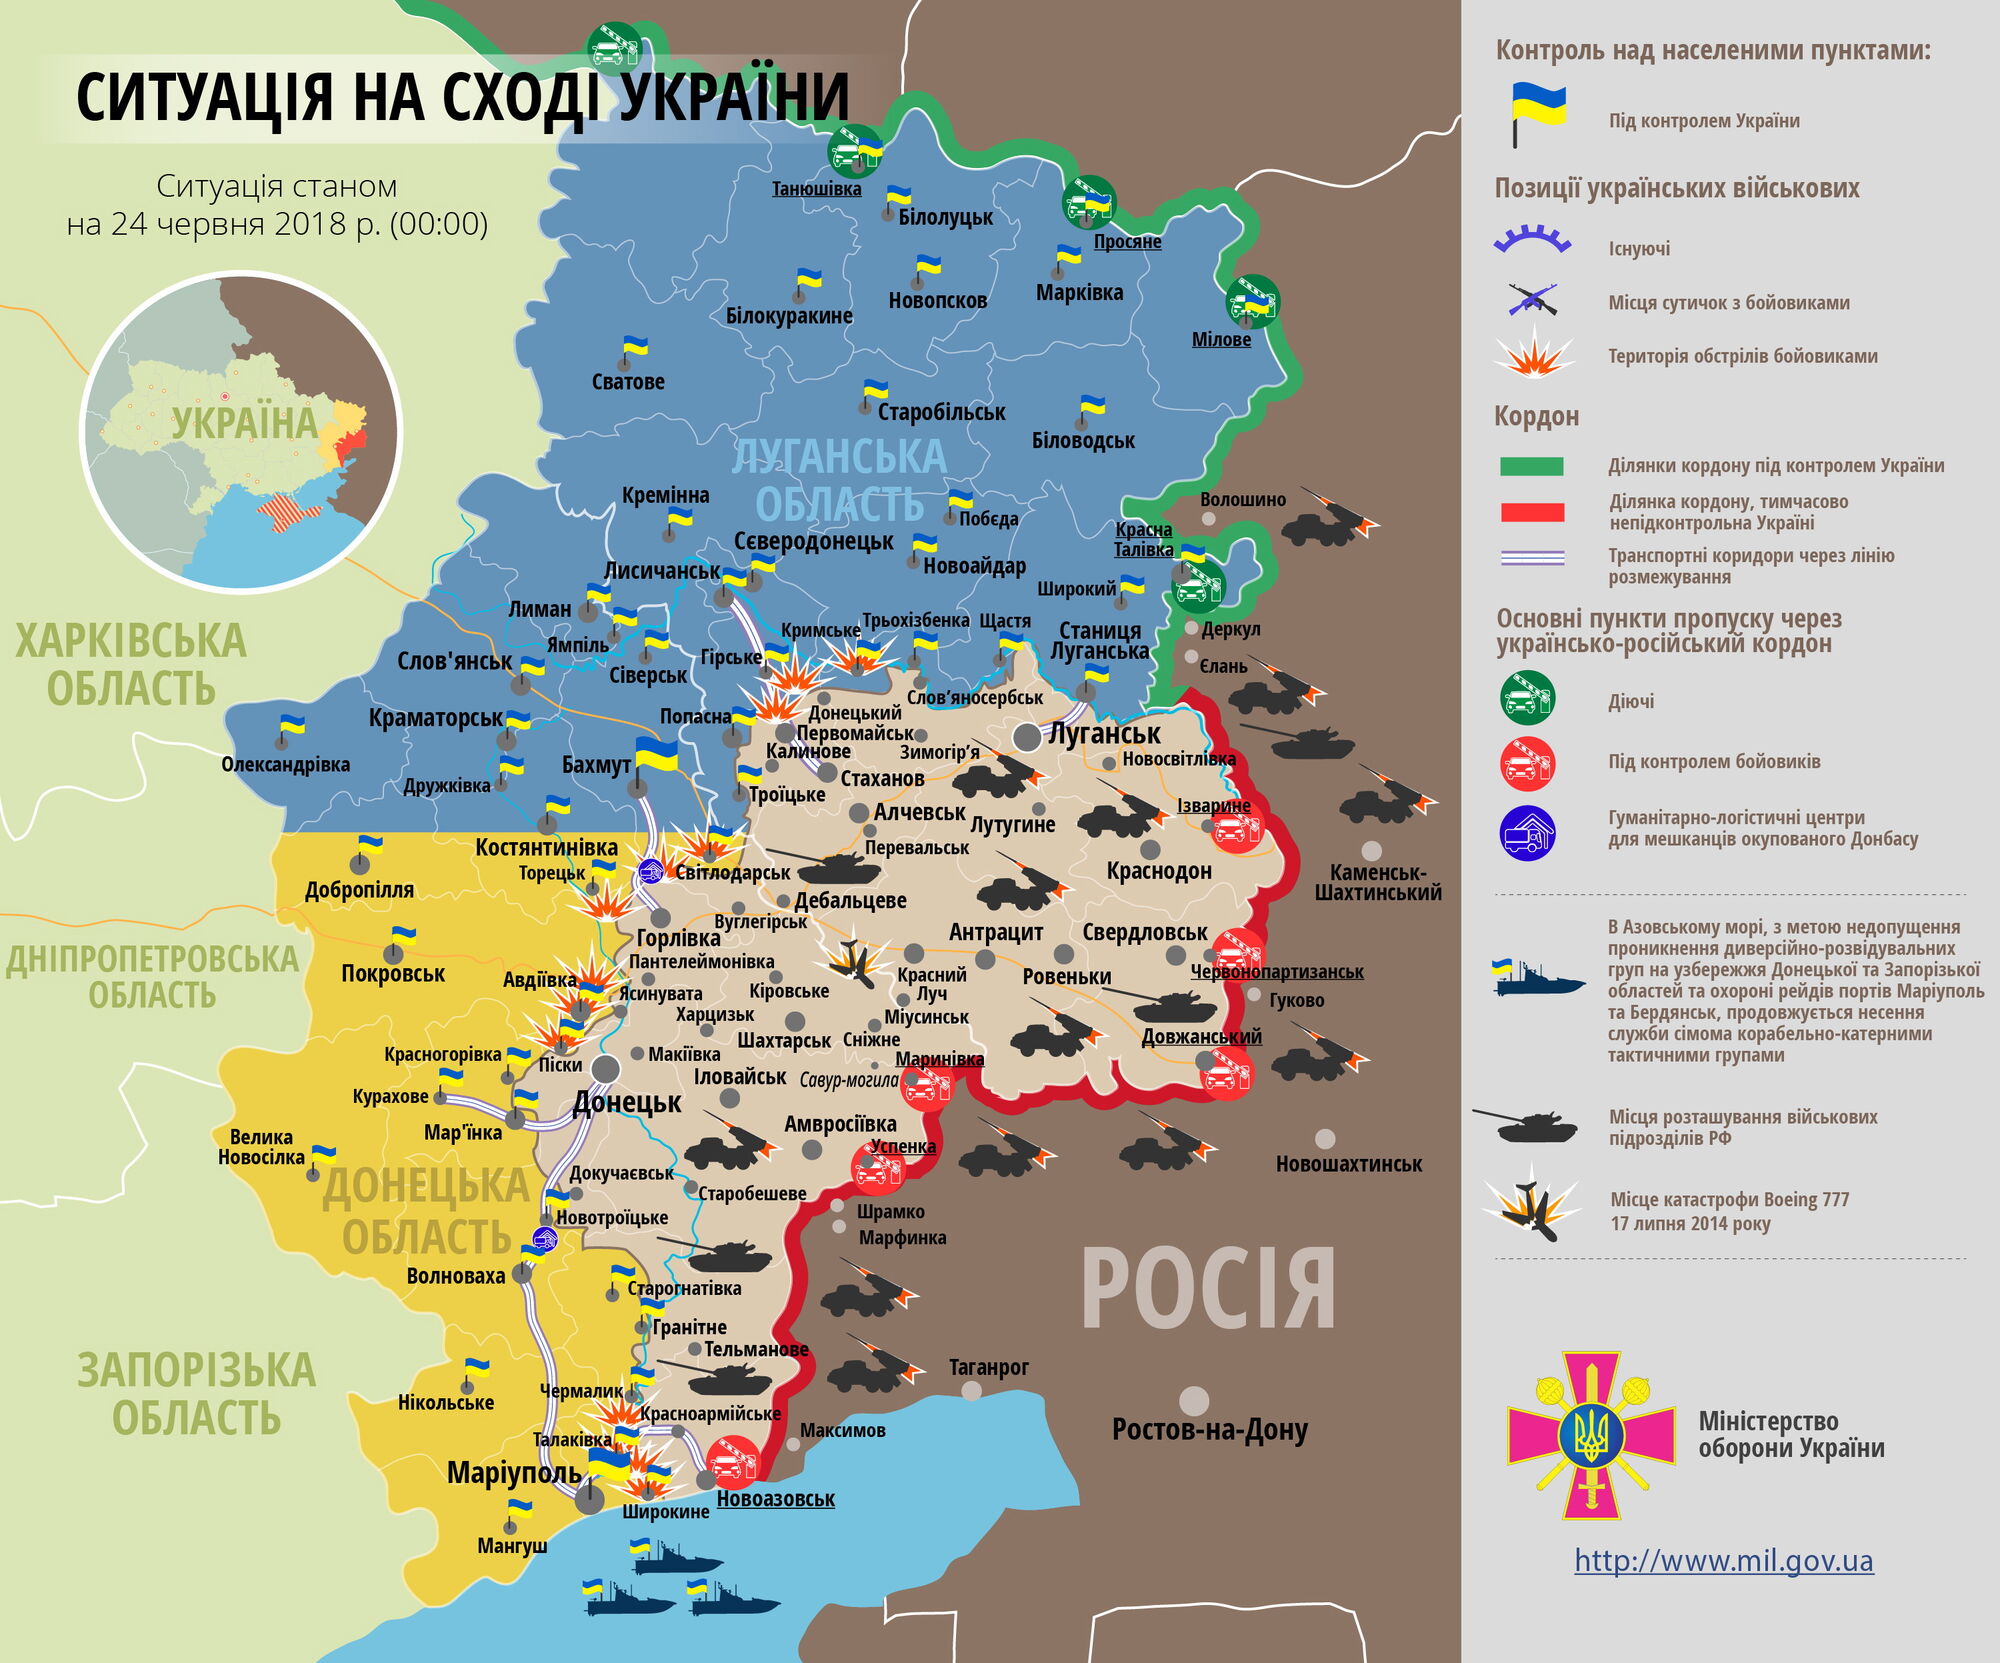 ВСУ попали под прицельный огонь на Донбассе: есть потери